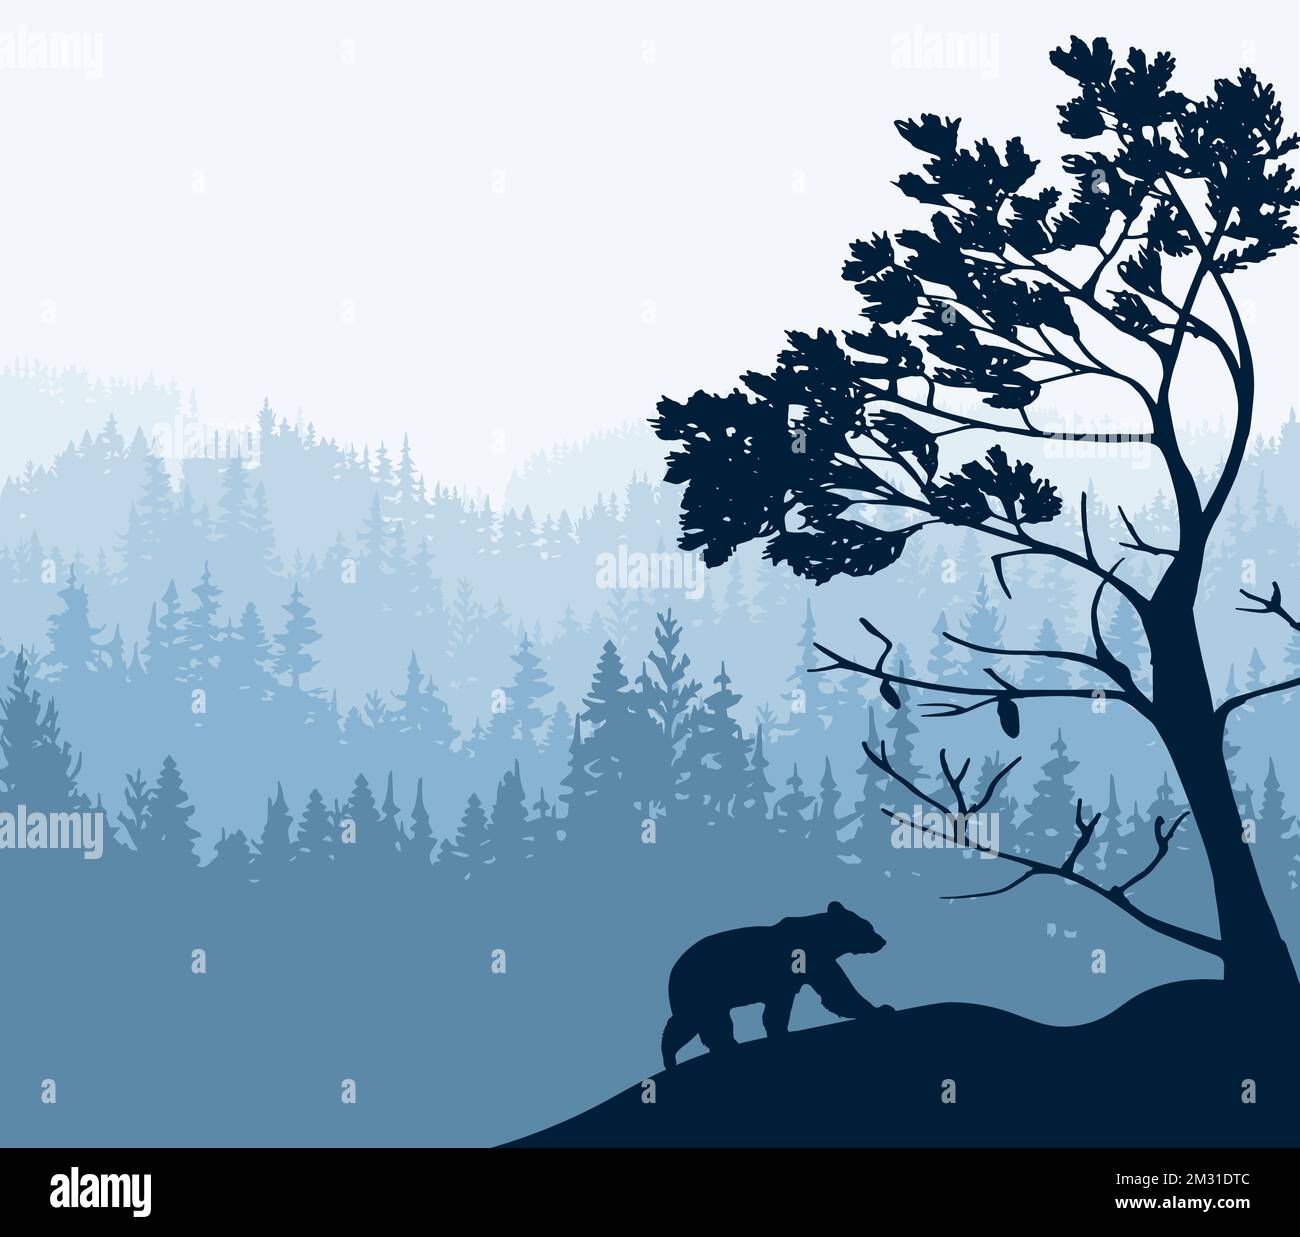 Die Silhouette des Bären klettert den Hügel hinauf. Baum vorne, Waldhintergrund. Magische neblige Landschaft. Illustration, Abzeichen, Aufkleber. Stock Vektor